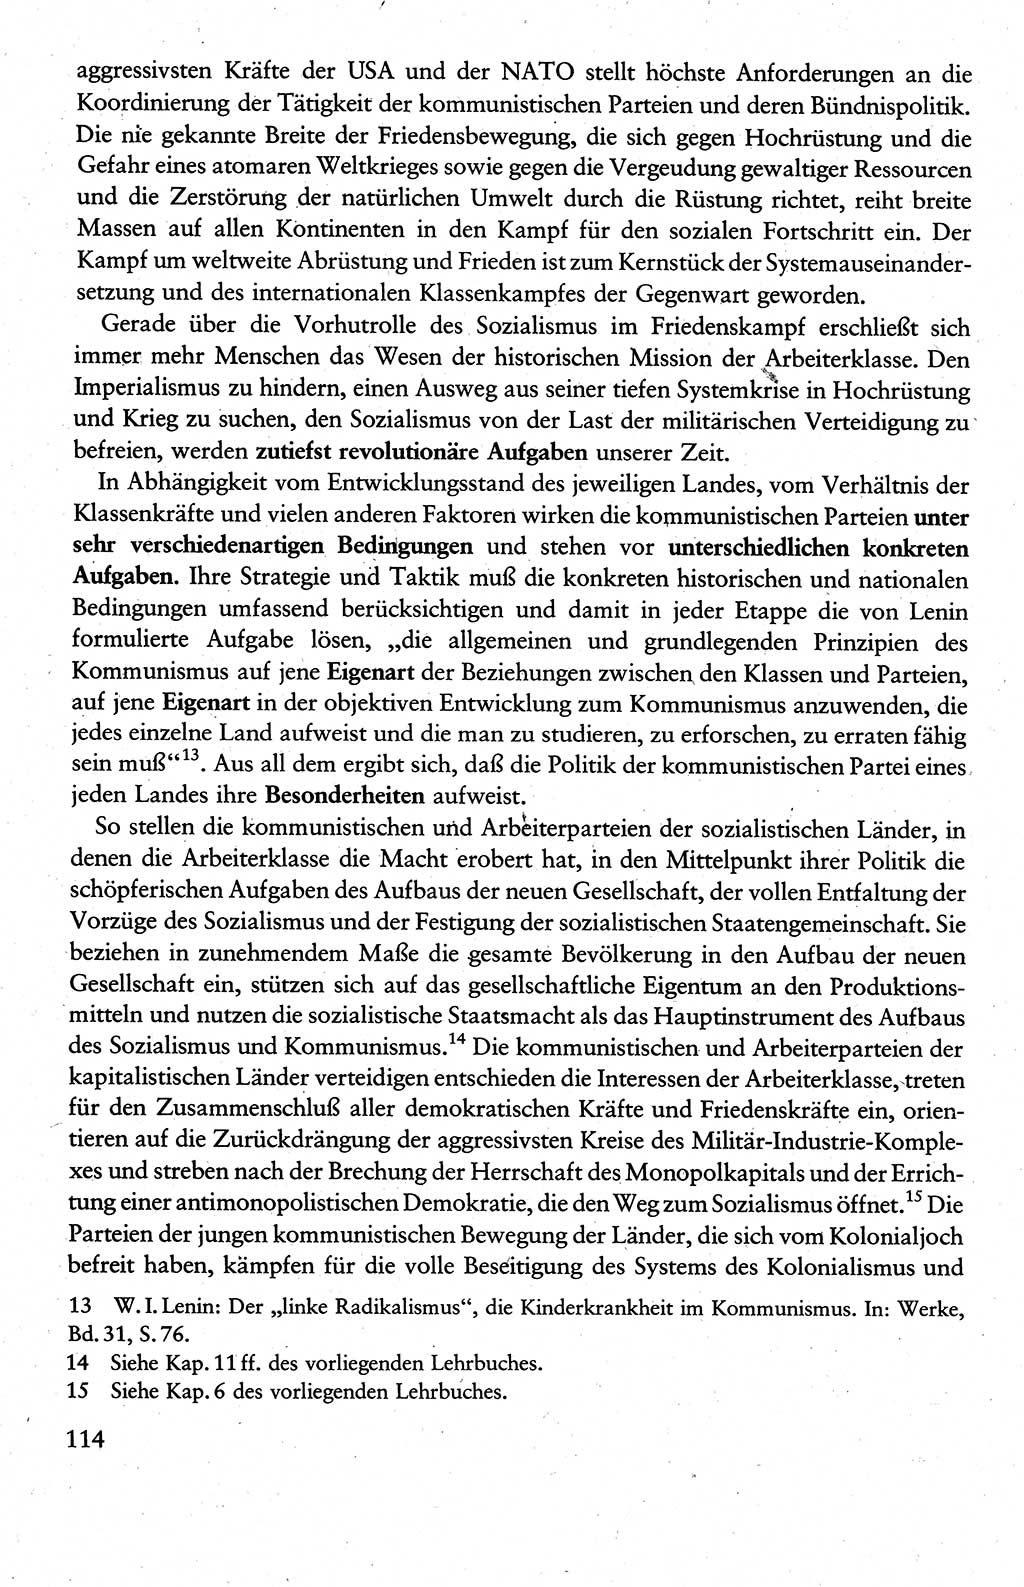 Wissenschaftlicher Kommunismus [Deutsche Demokratische Republik (DDR)], Lehrbuch für das marxistisch-leninistische Grundlagenstudium 1983, Seite 114 (Wiss. Komm. DDR Lb. 1983, S. 114)